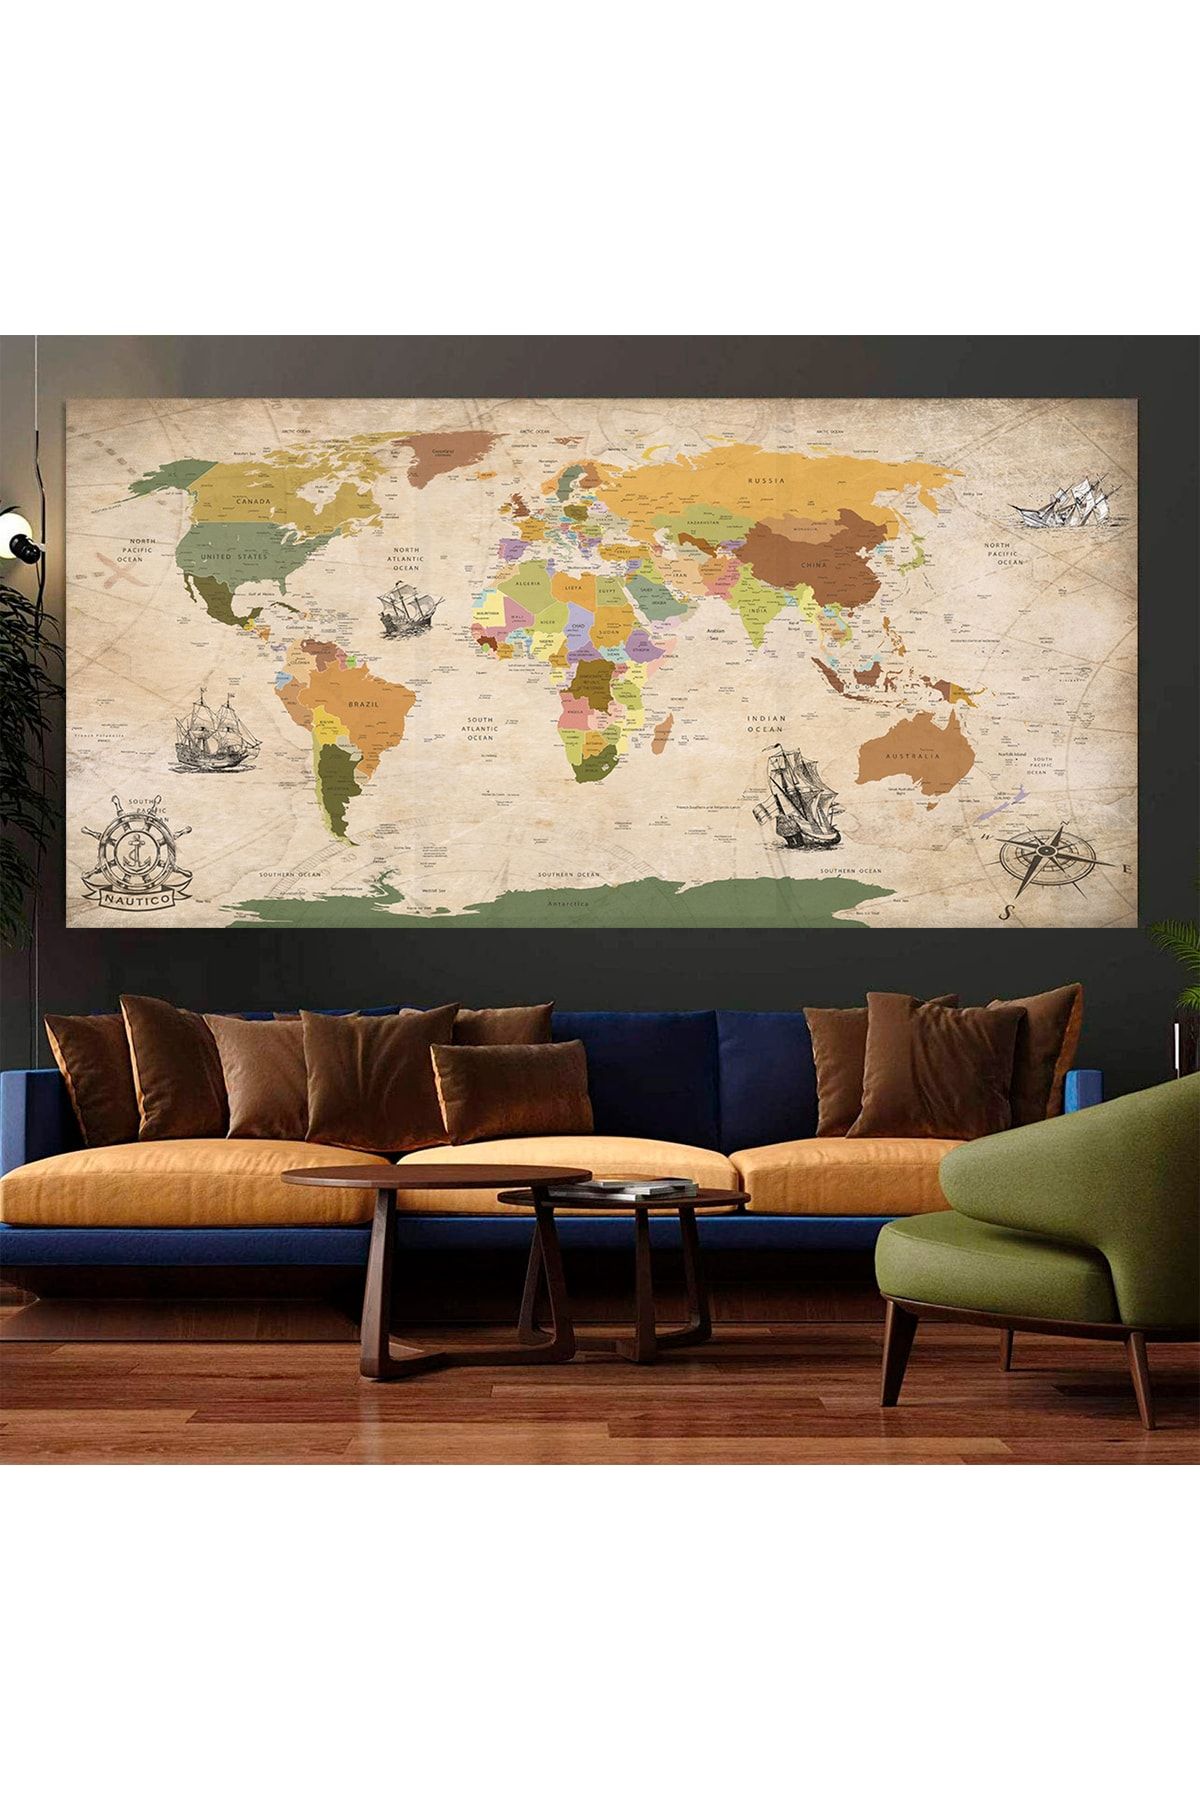 Idora Denizcilik Kanvas Dünya Haritası Vintange Design